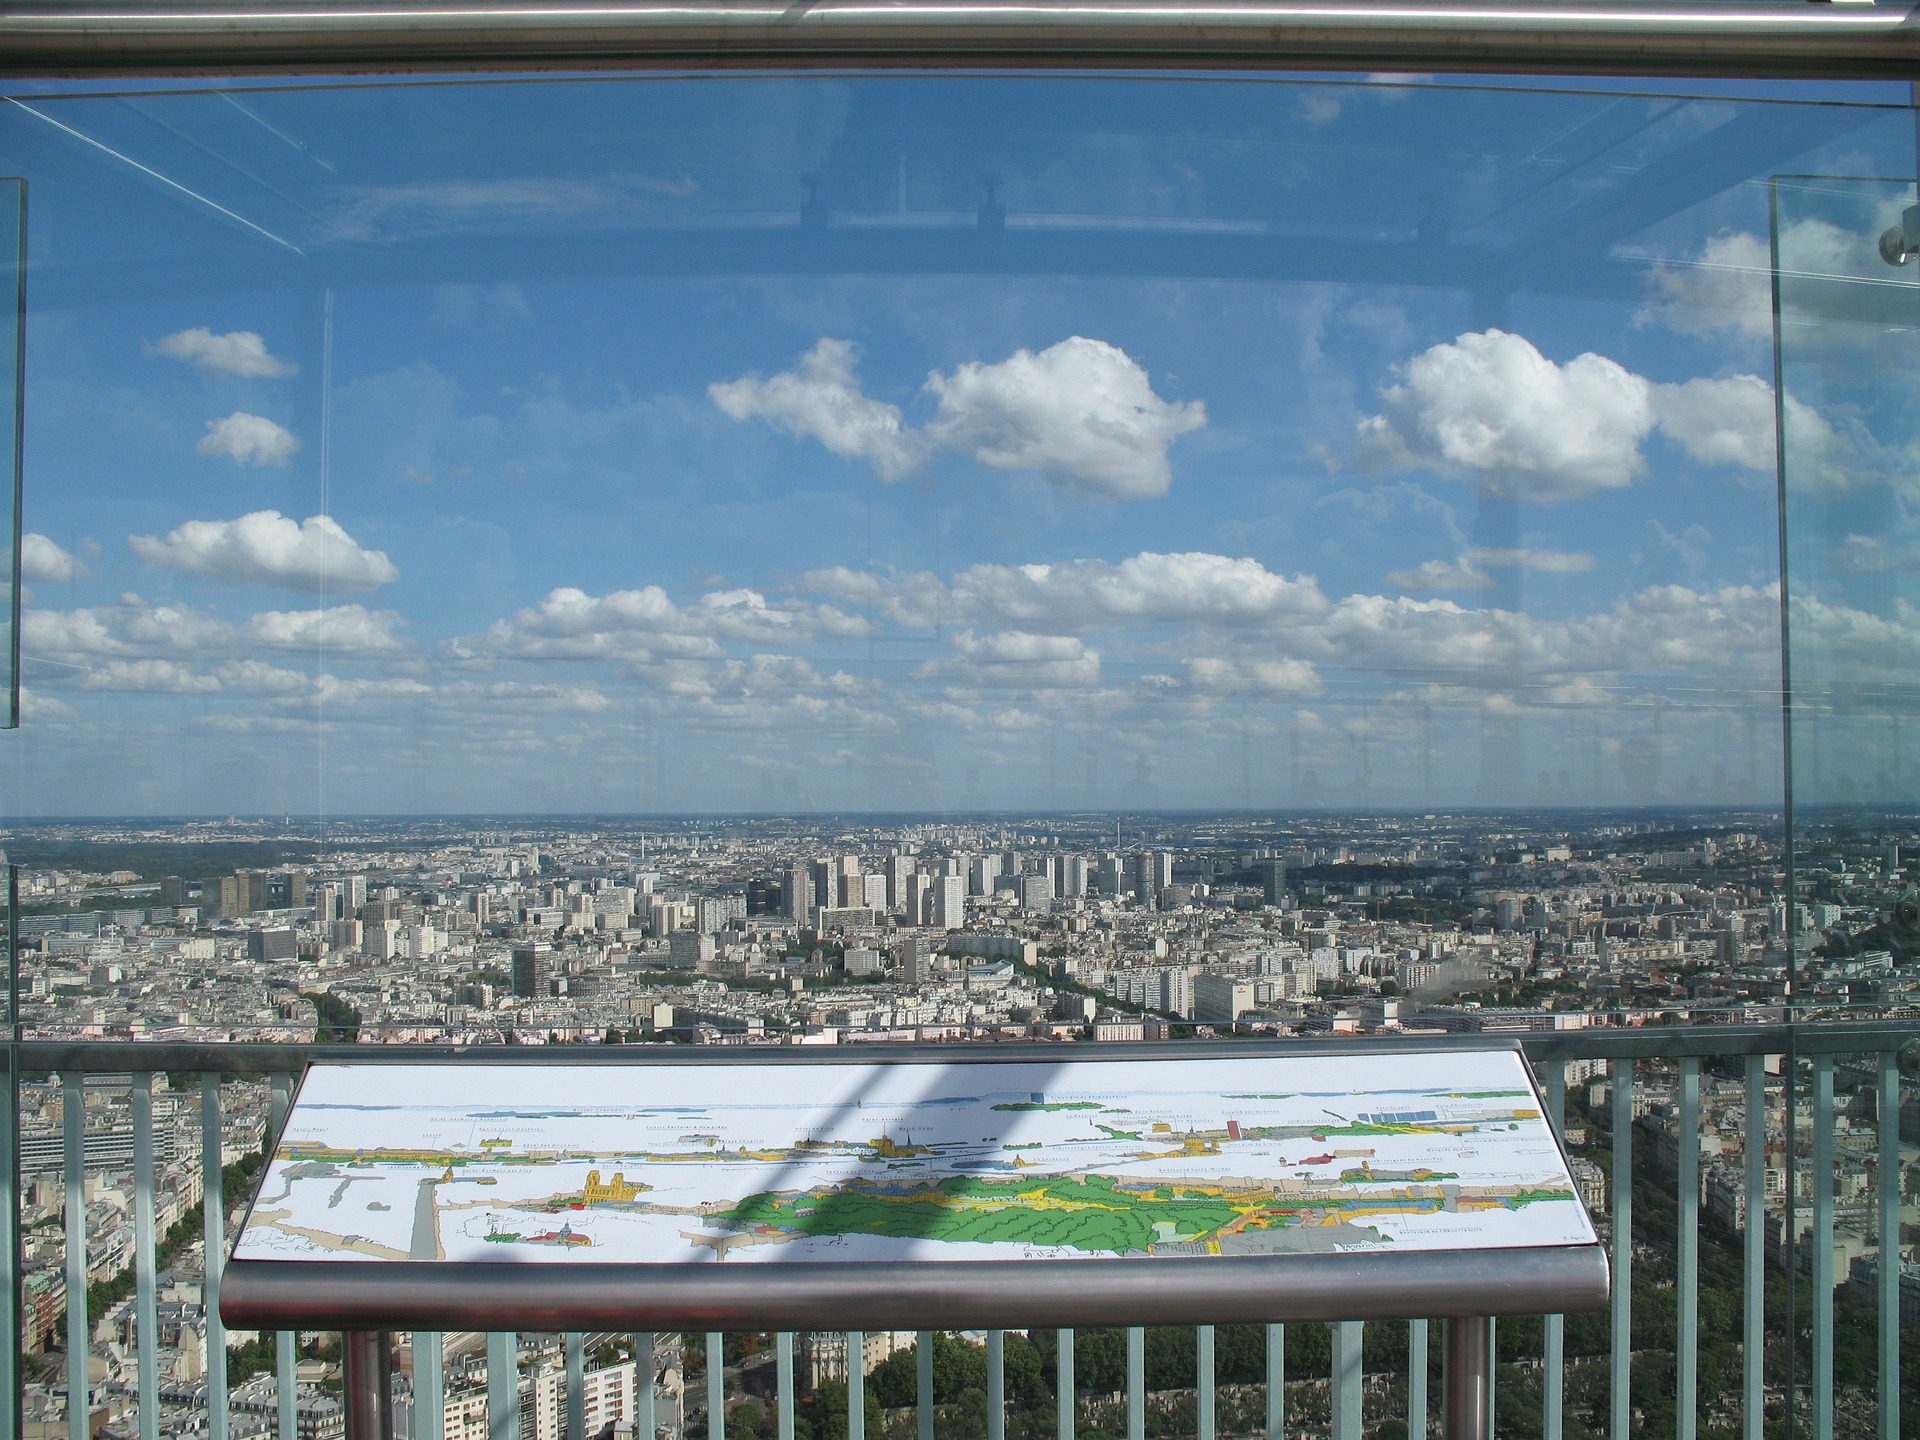 Montparnesse Tower & Observation Deck, Paris